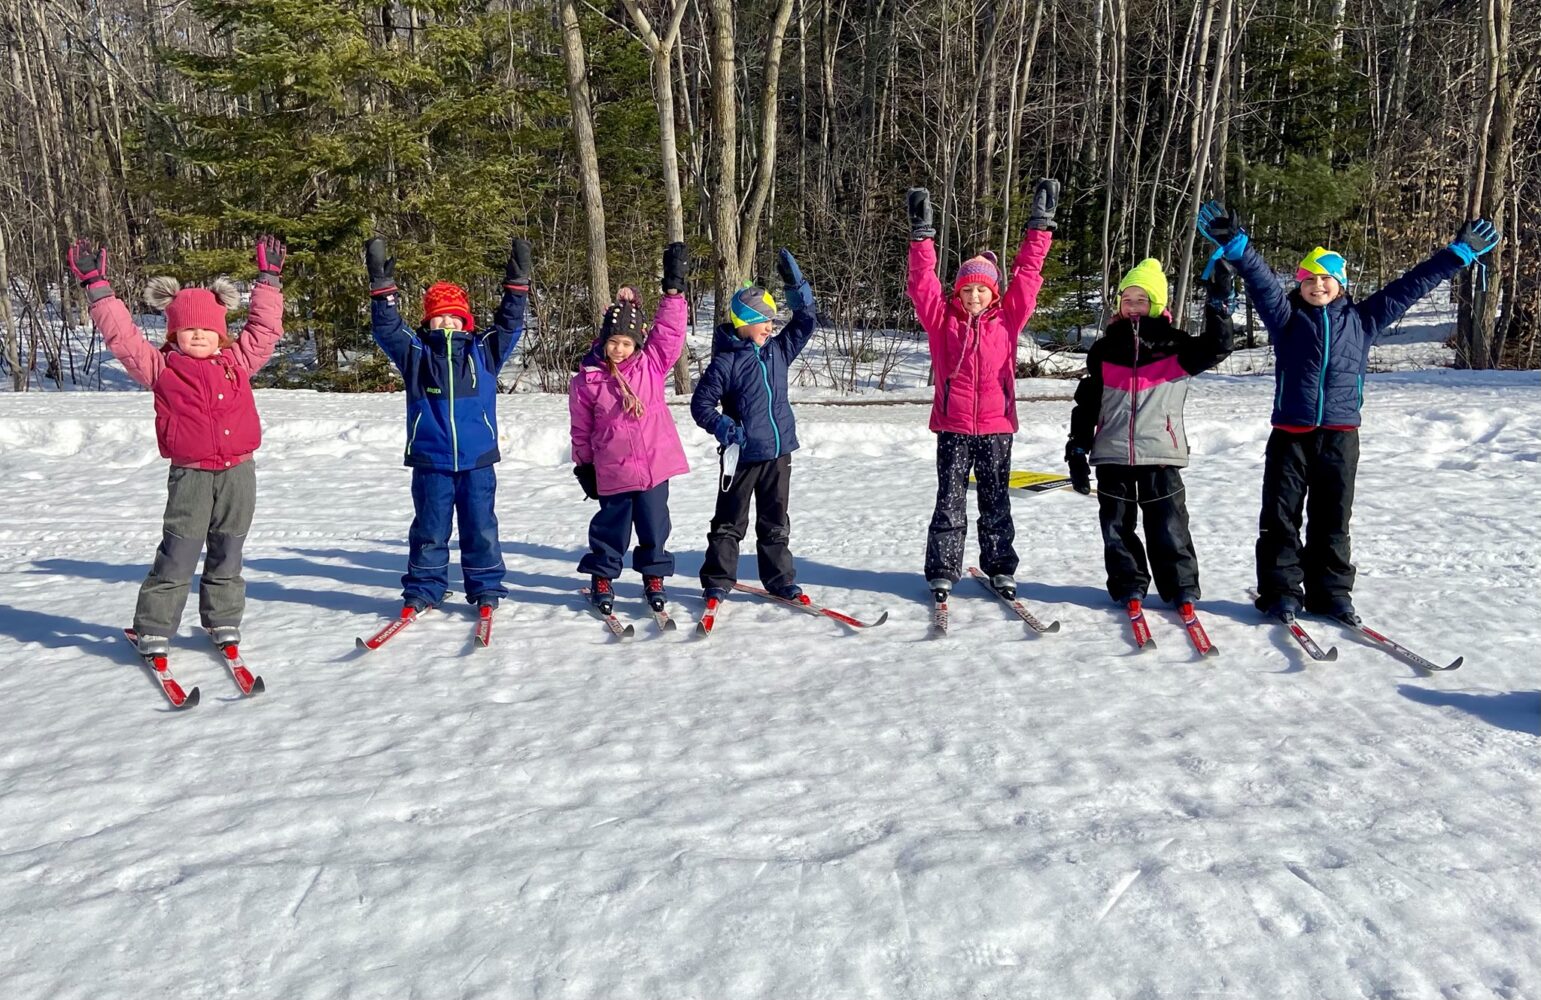 Des jeunes heureux en ski de fond